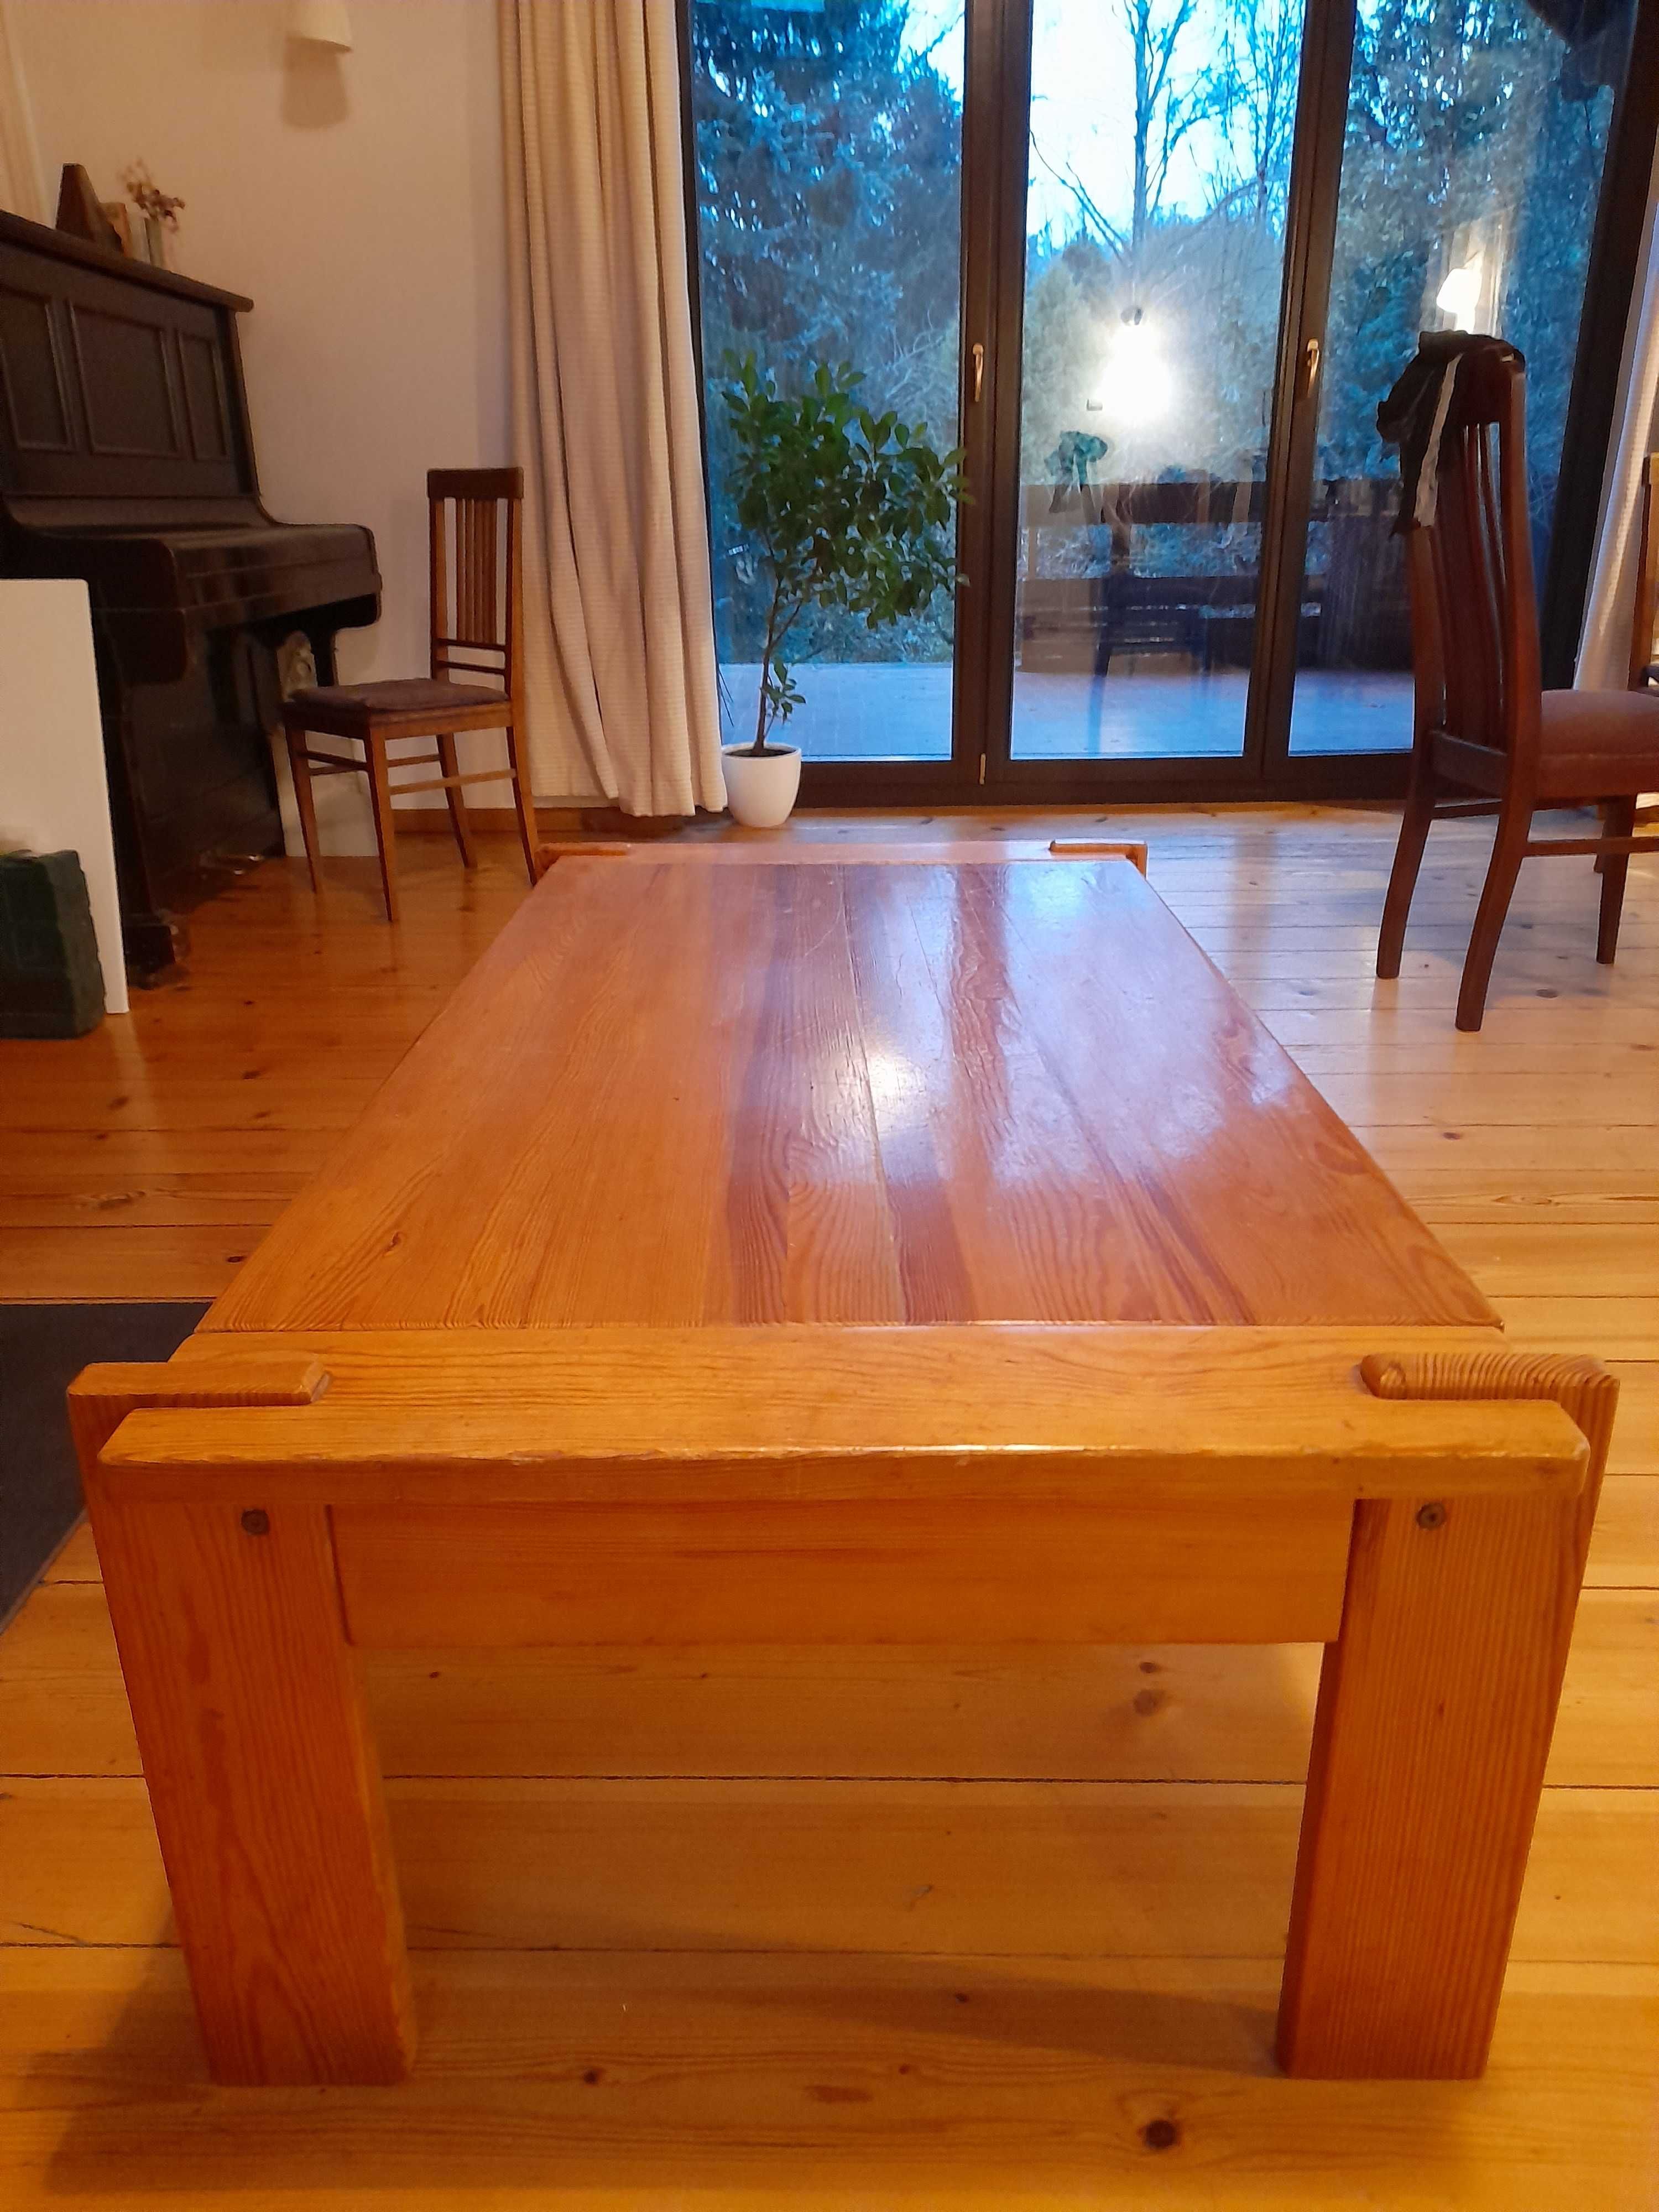 Stół drewniany typu ława: wys 47cm, szerokość 70 cm, długość 140 cm